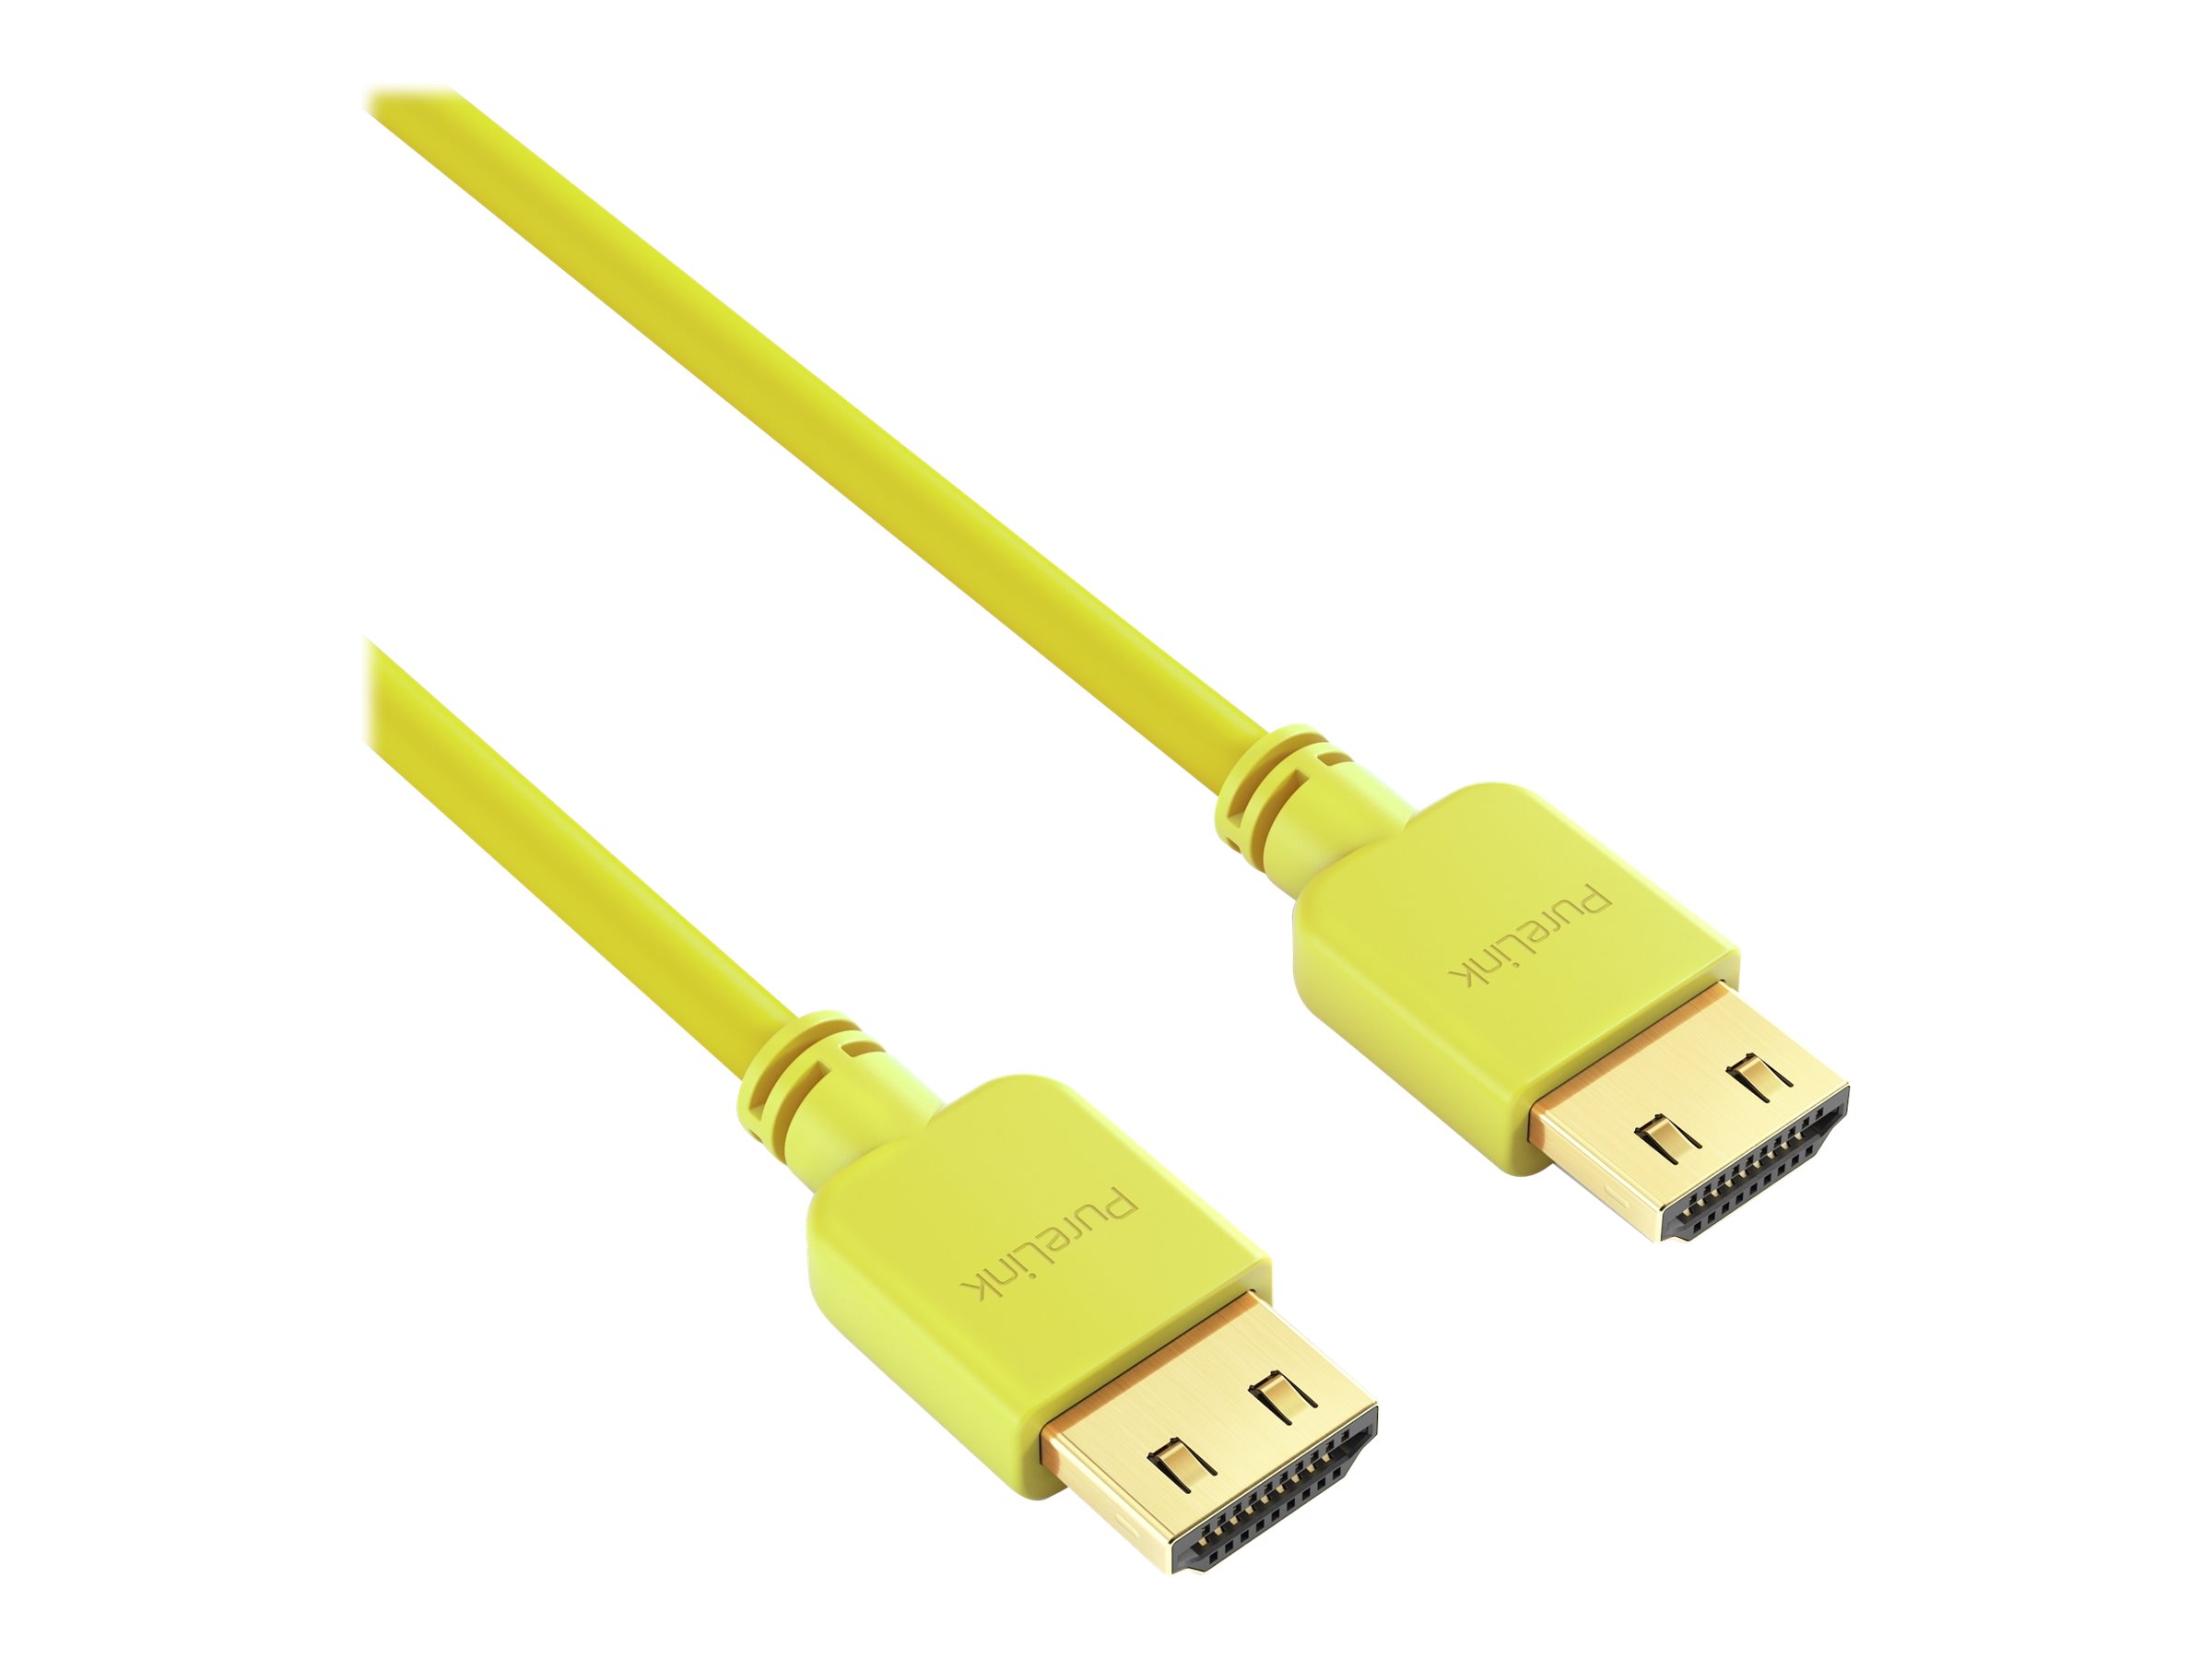 PureLink PureInstall Series - HDMI-Kabel mit Ethernet - HDMI männlich zu HDMI männlich - 1 m - Dreifachisolierung - Gelb